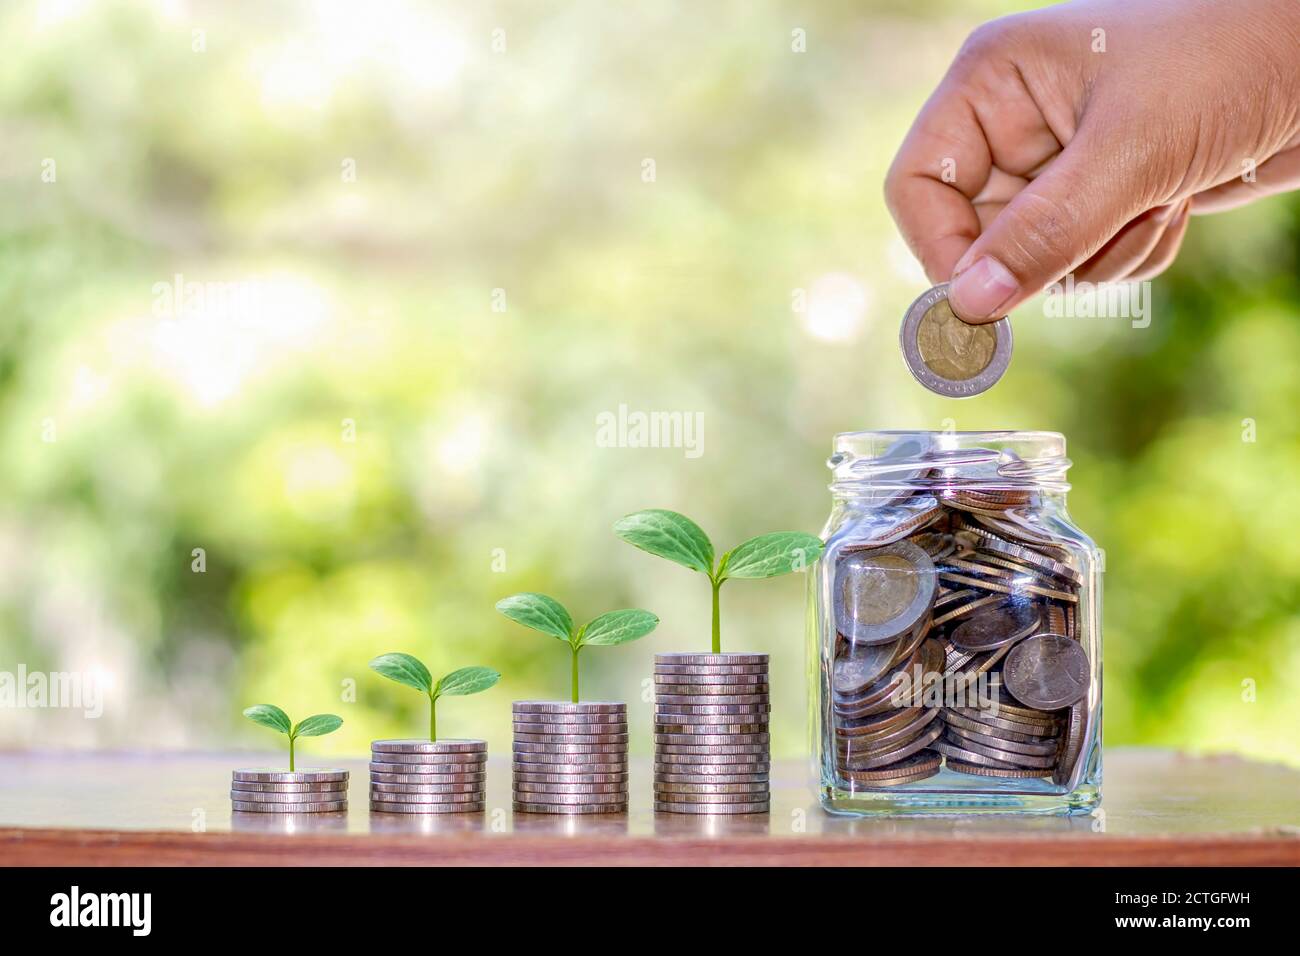 L'arbre pousse sur un tas de pièces, un pot d'argent pour économiser de l'argent, des idées, et pour croître financièrement et investir dans l'agriculture. Banque D'Images